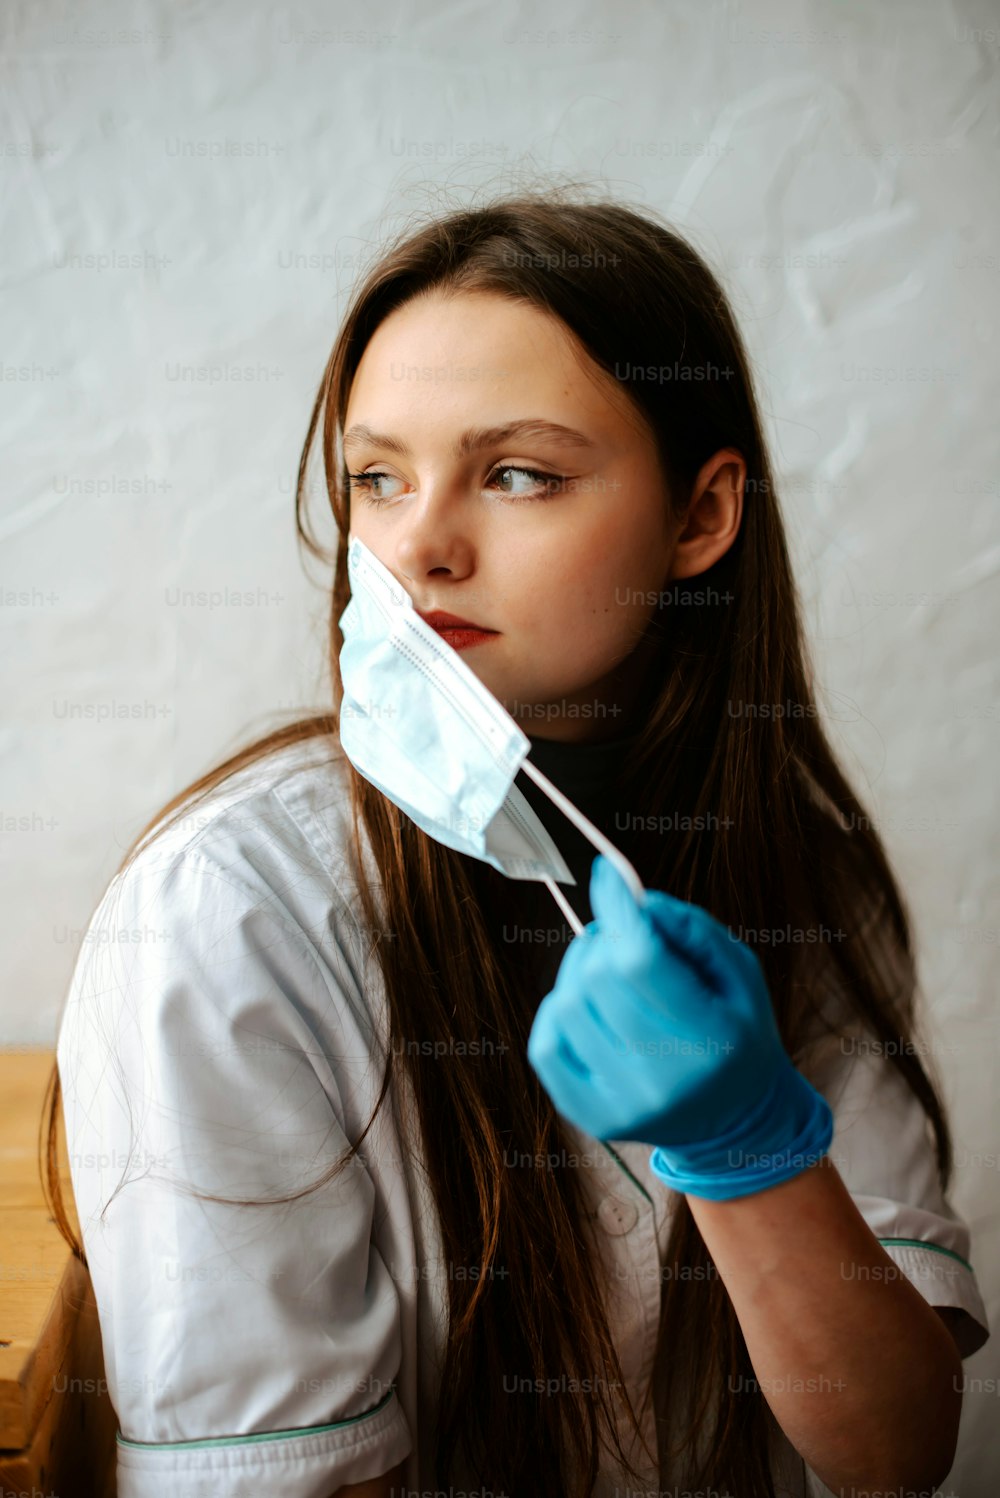 Une femme vêtue d’une chemise blanche et de gants bleus tient un masque chirurgical sur sa bouche